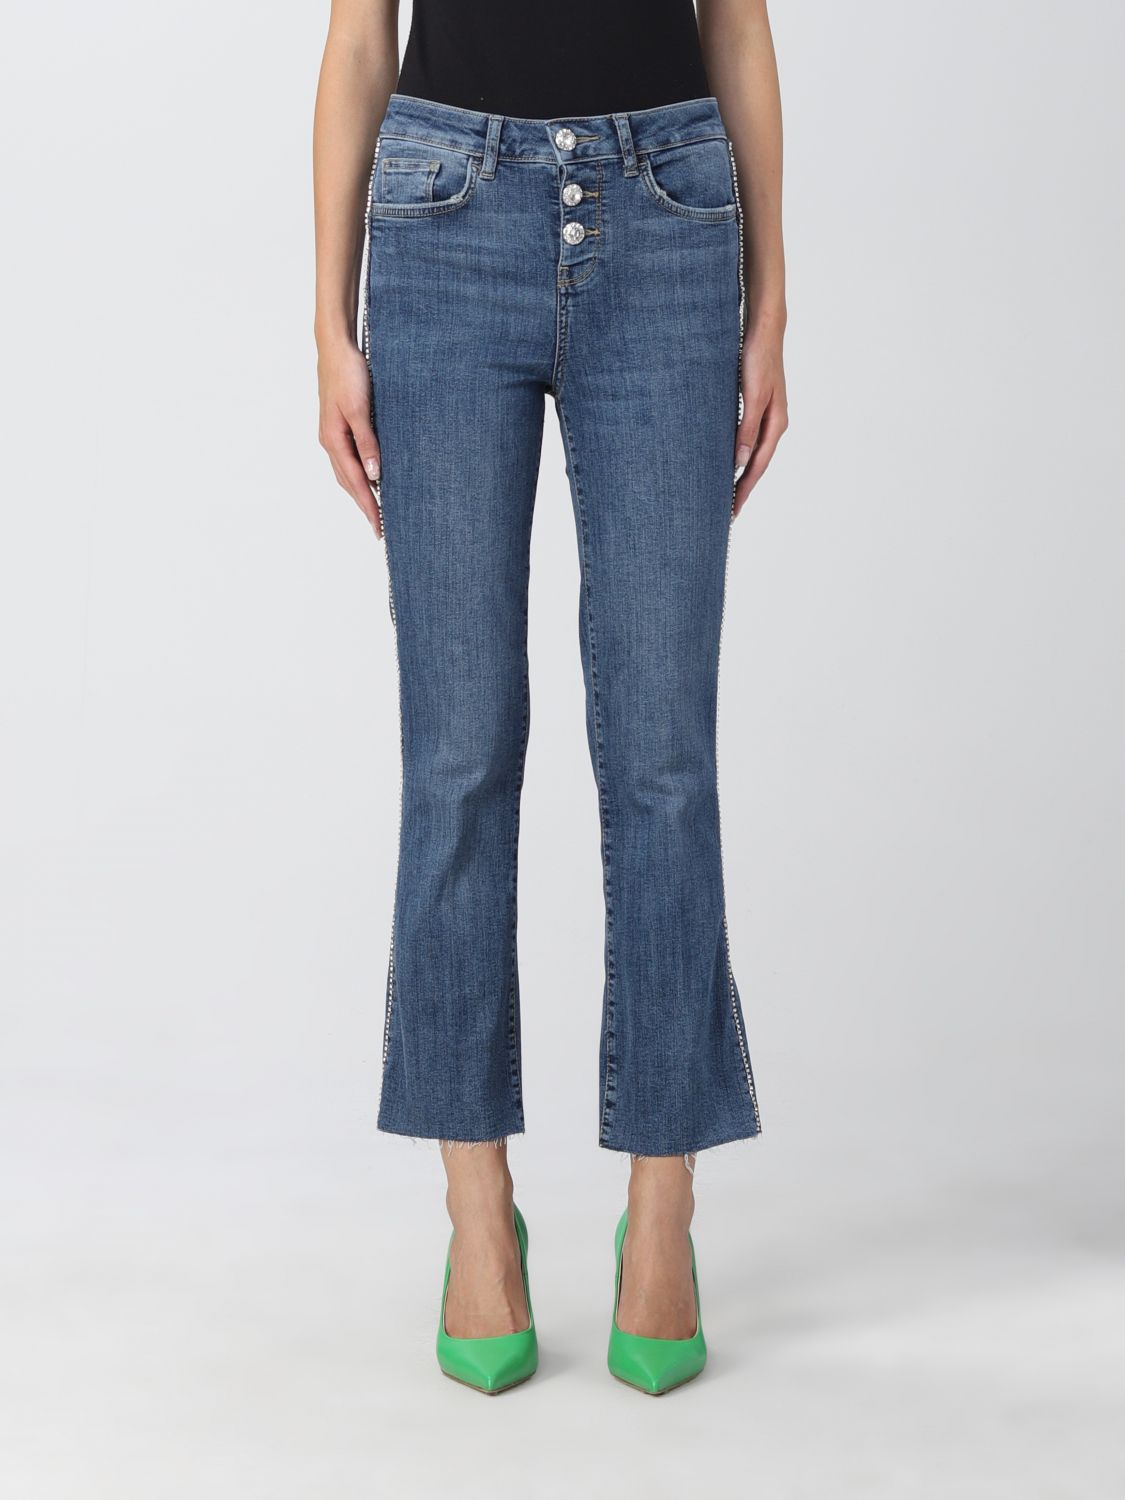 Conserveermiddel Zweet Destructief Liu Jo Outlet: jeans for woman - Denim | Liu Jo jeans UF2040D4391 online on  GIGLIO.COM